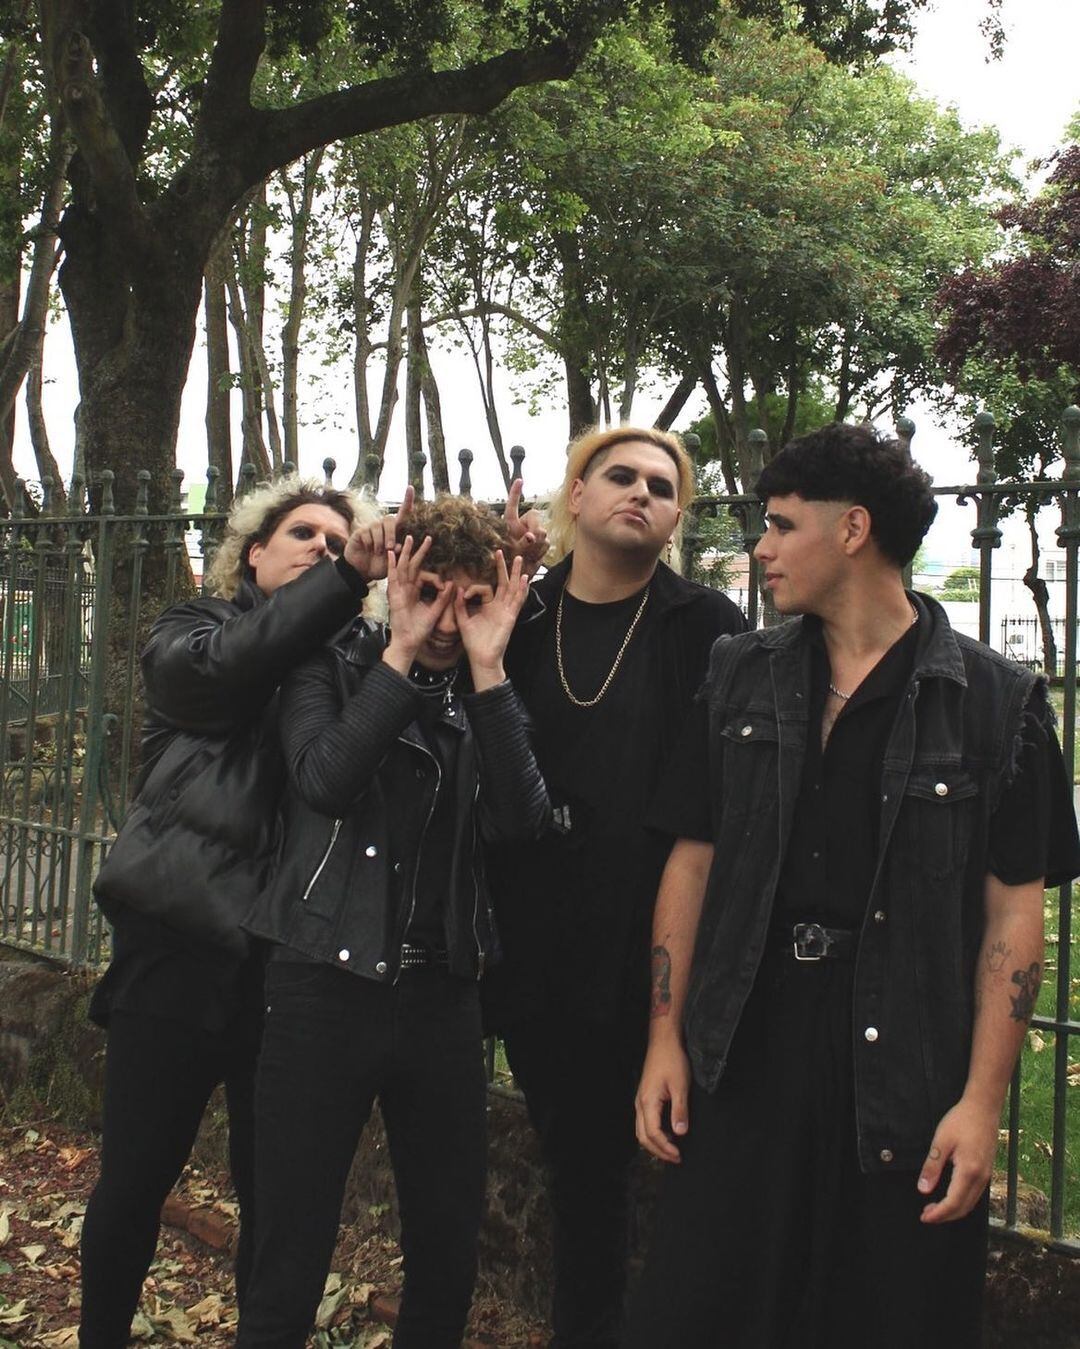 La banda FrioLento de Chile experimenta con el post punk y el reggaetón, géneros que se pensaban opuestos (Foto: Instagram @friolentomusica)